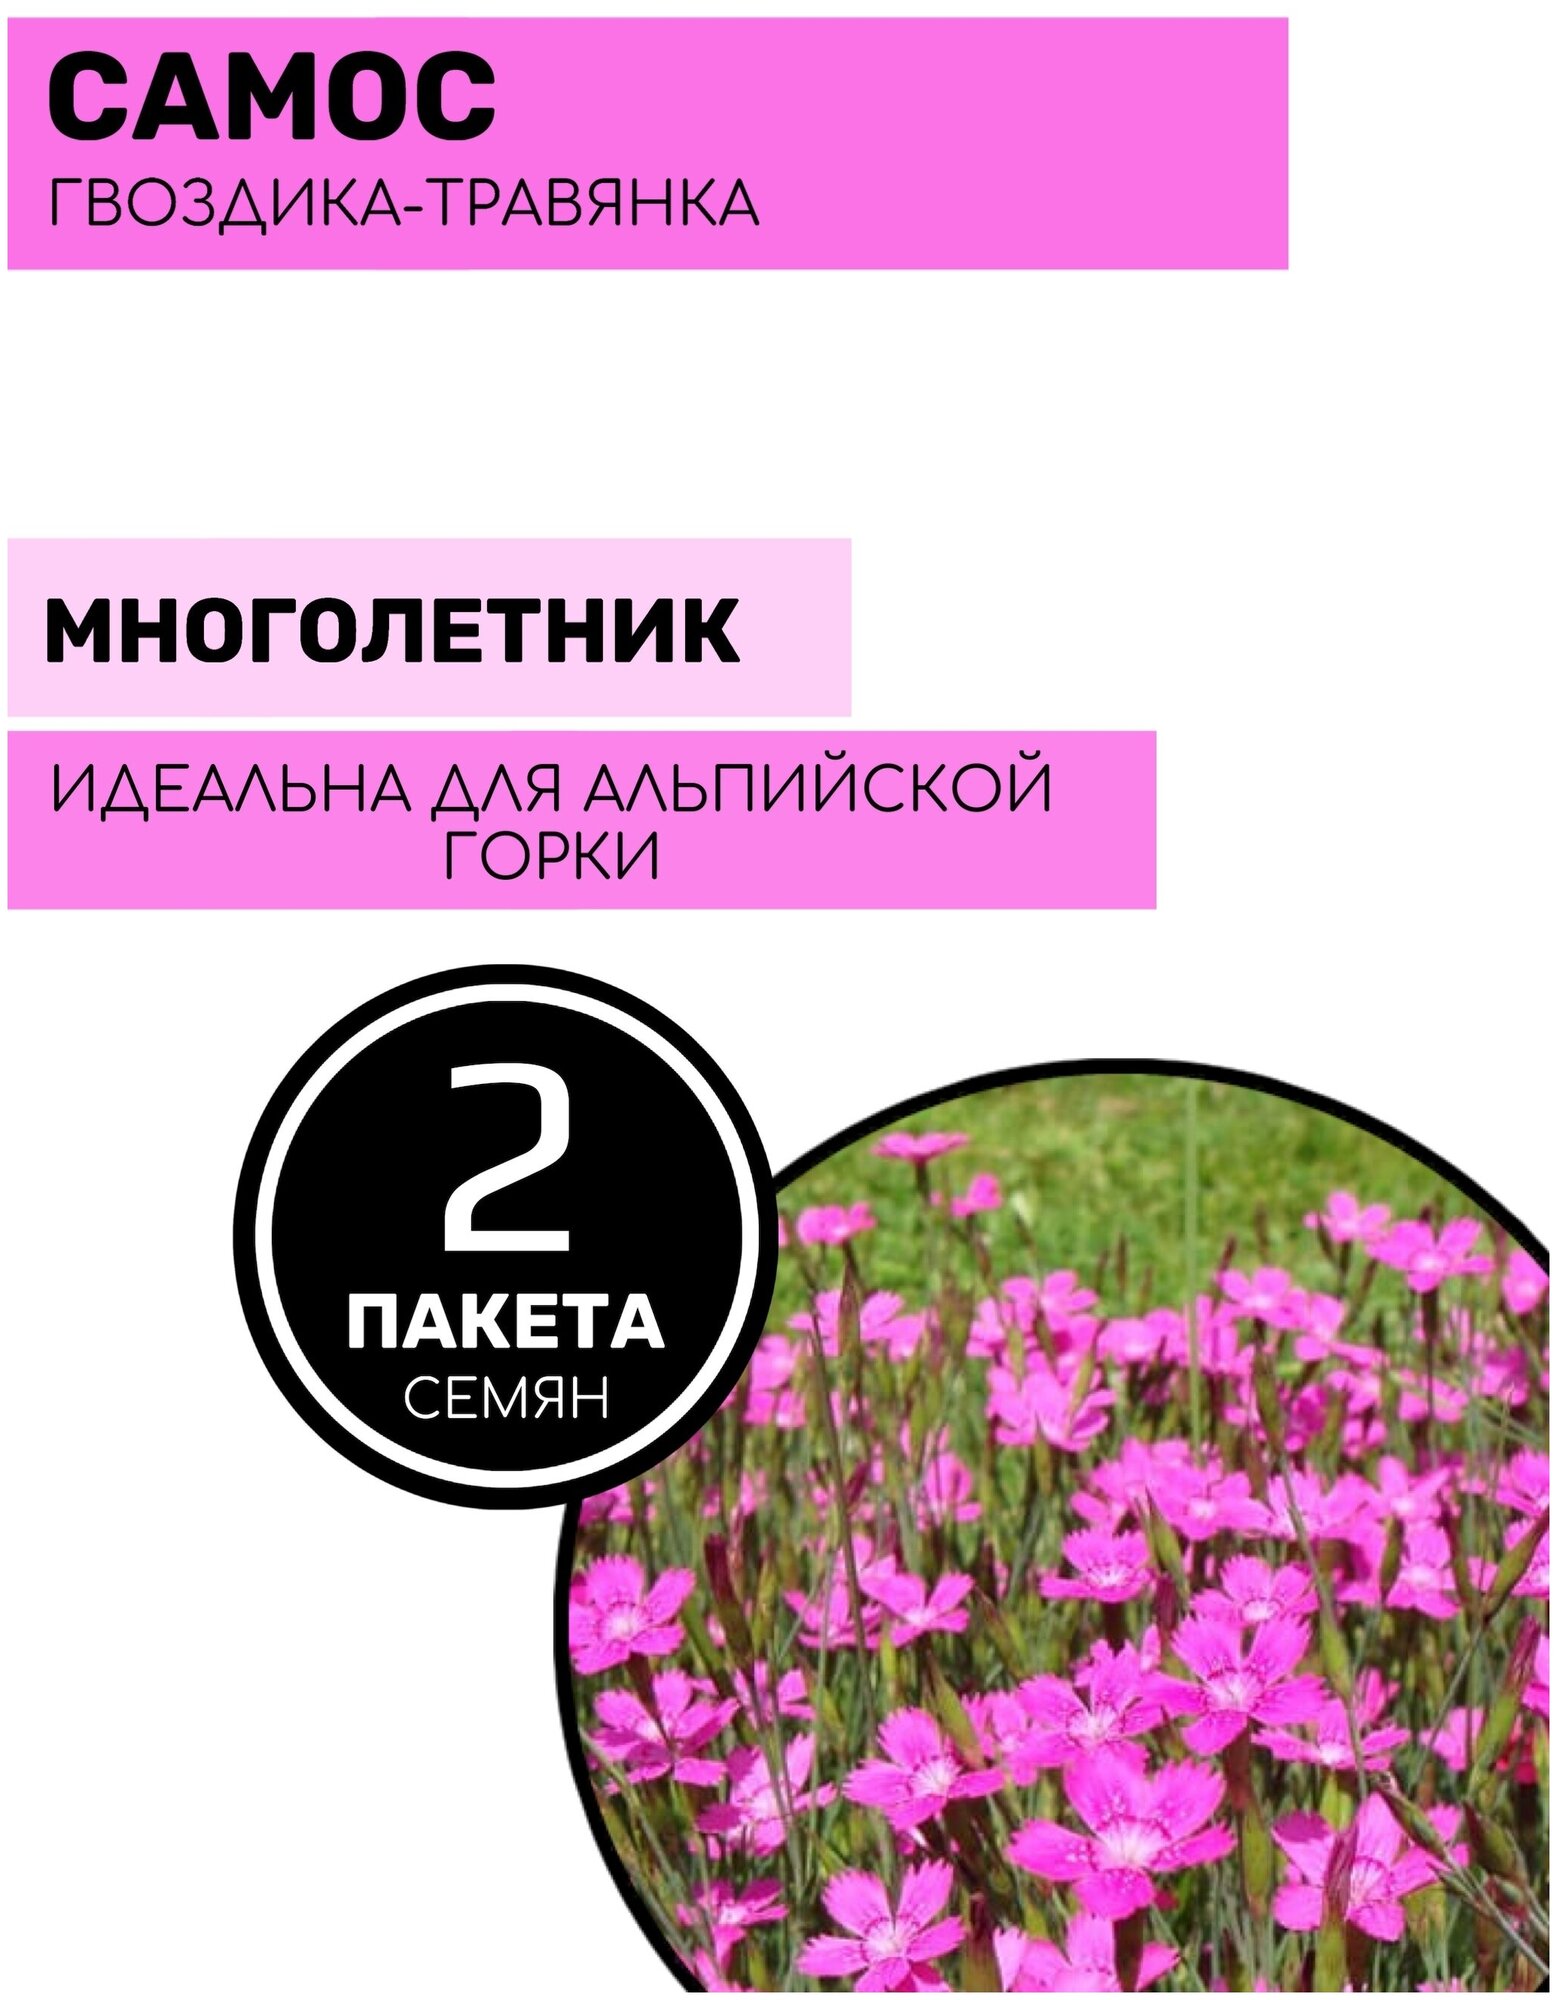 Цветы Гвоздика - травянка Самос 2 пакета по 0,05г семян